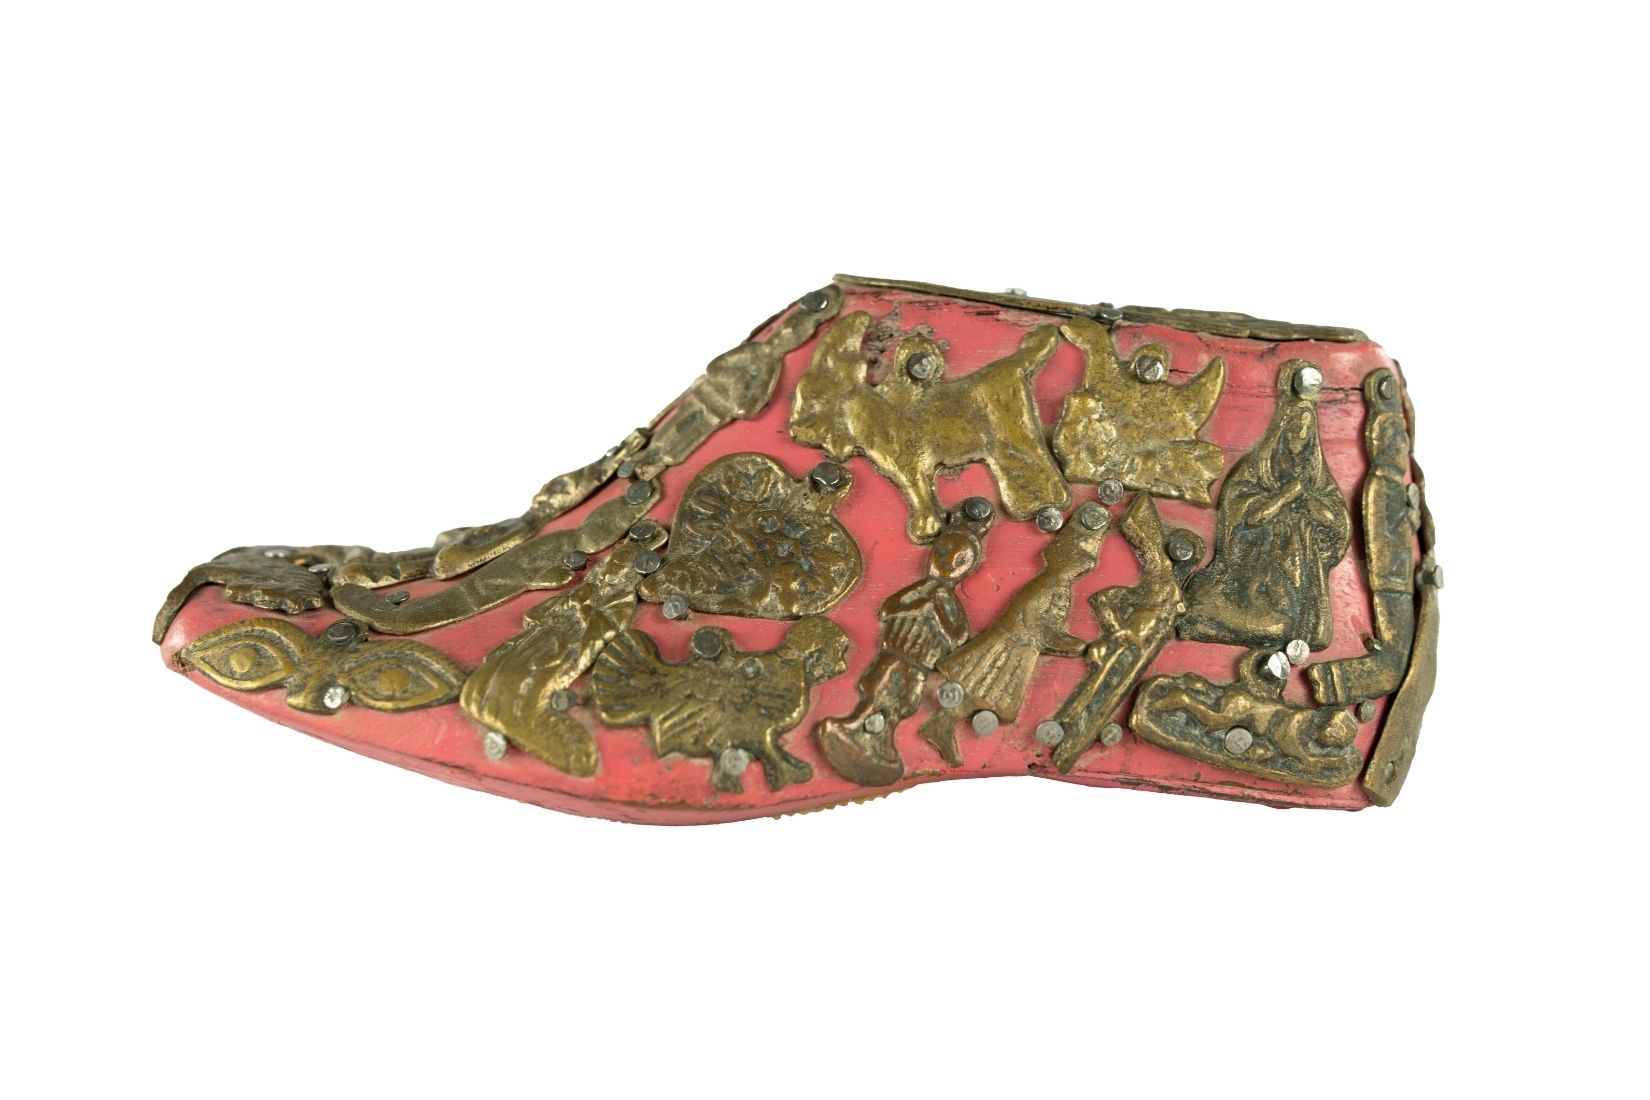 Horma de zapato tallada en madera con aplicaciones de metal. Artesano y procedencia desconocidos. Col. Yoje Tapuach, pieza donada a AmigosMAP. (Foto: EKV).